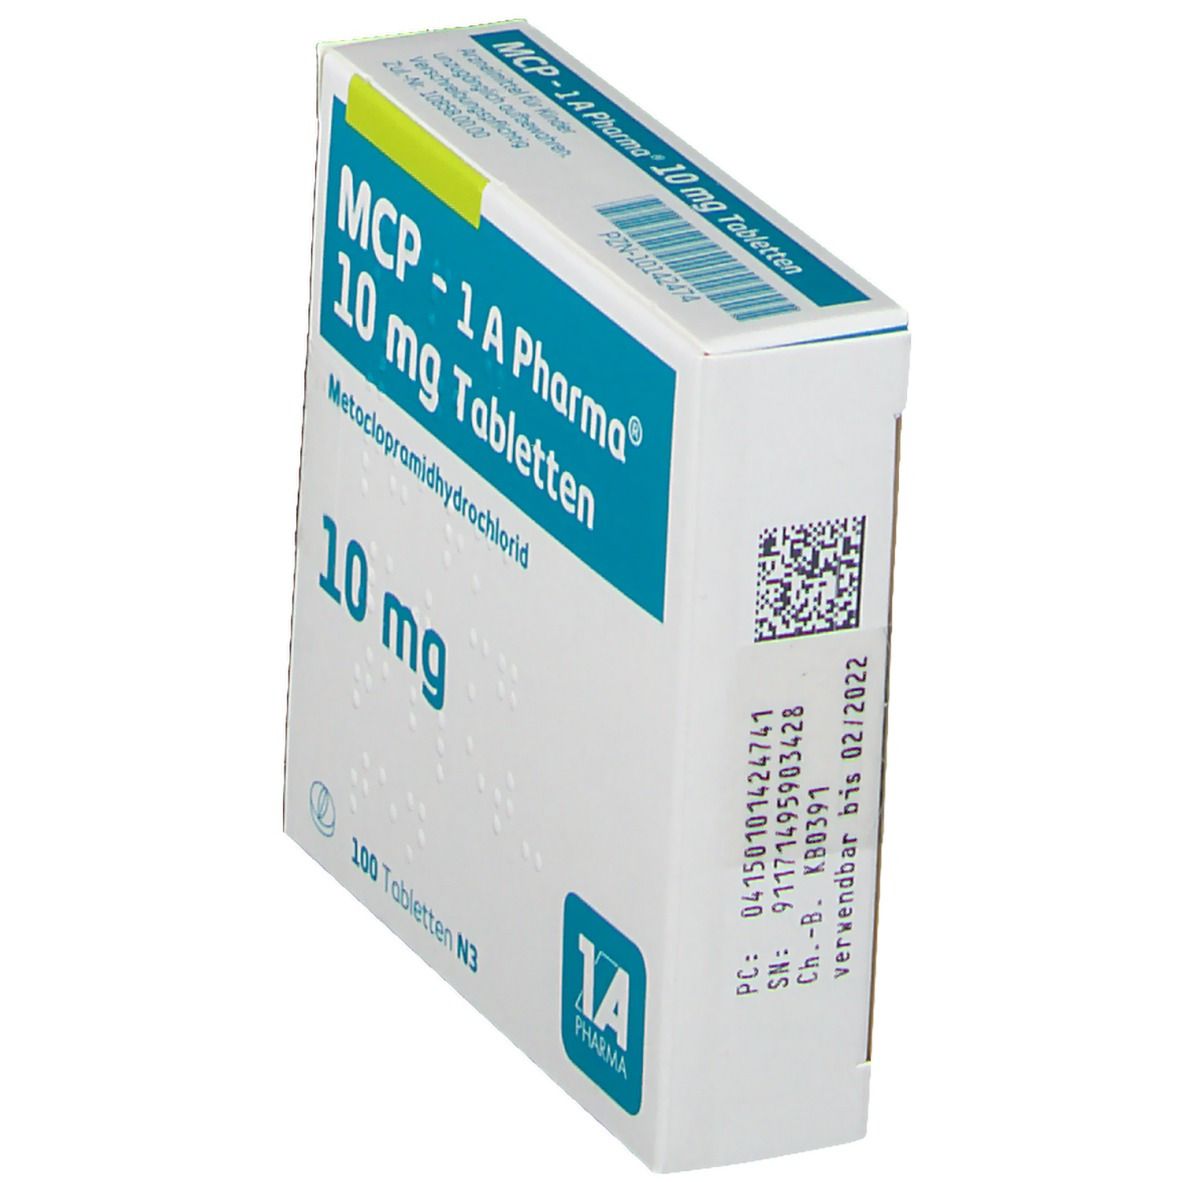 MCP - 1 A Pharma® 10 mg